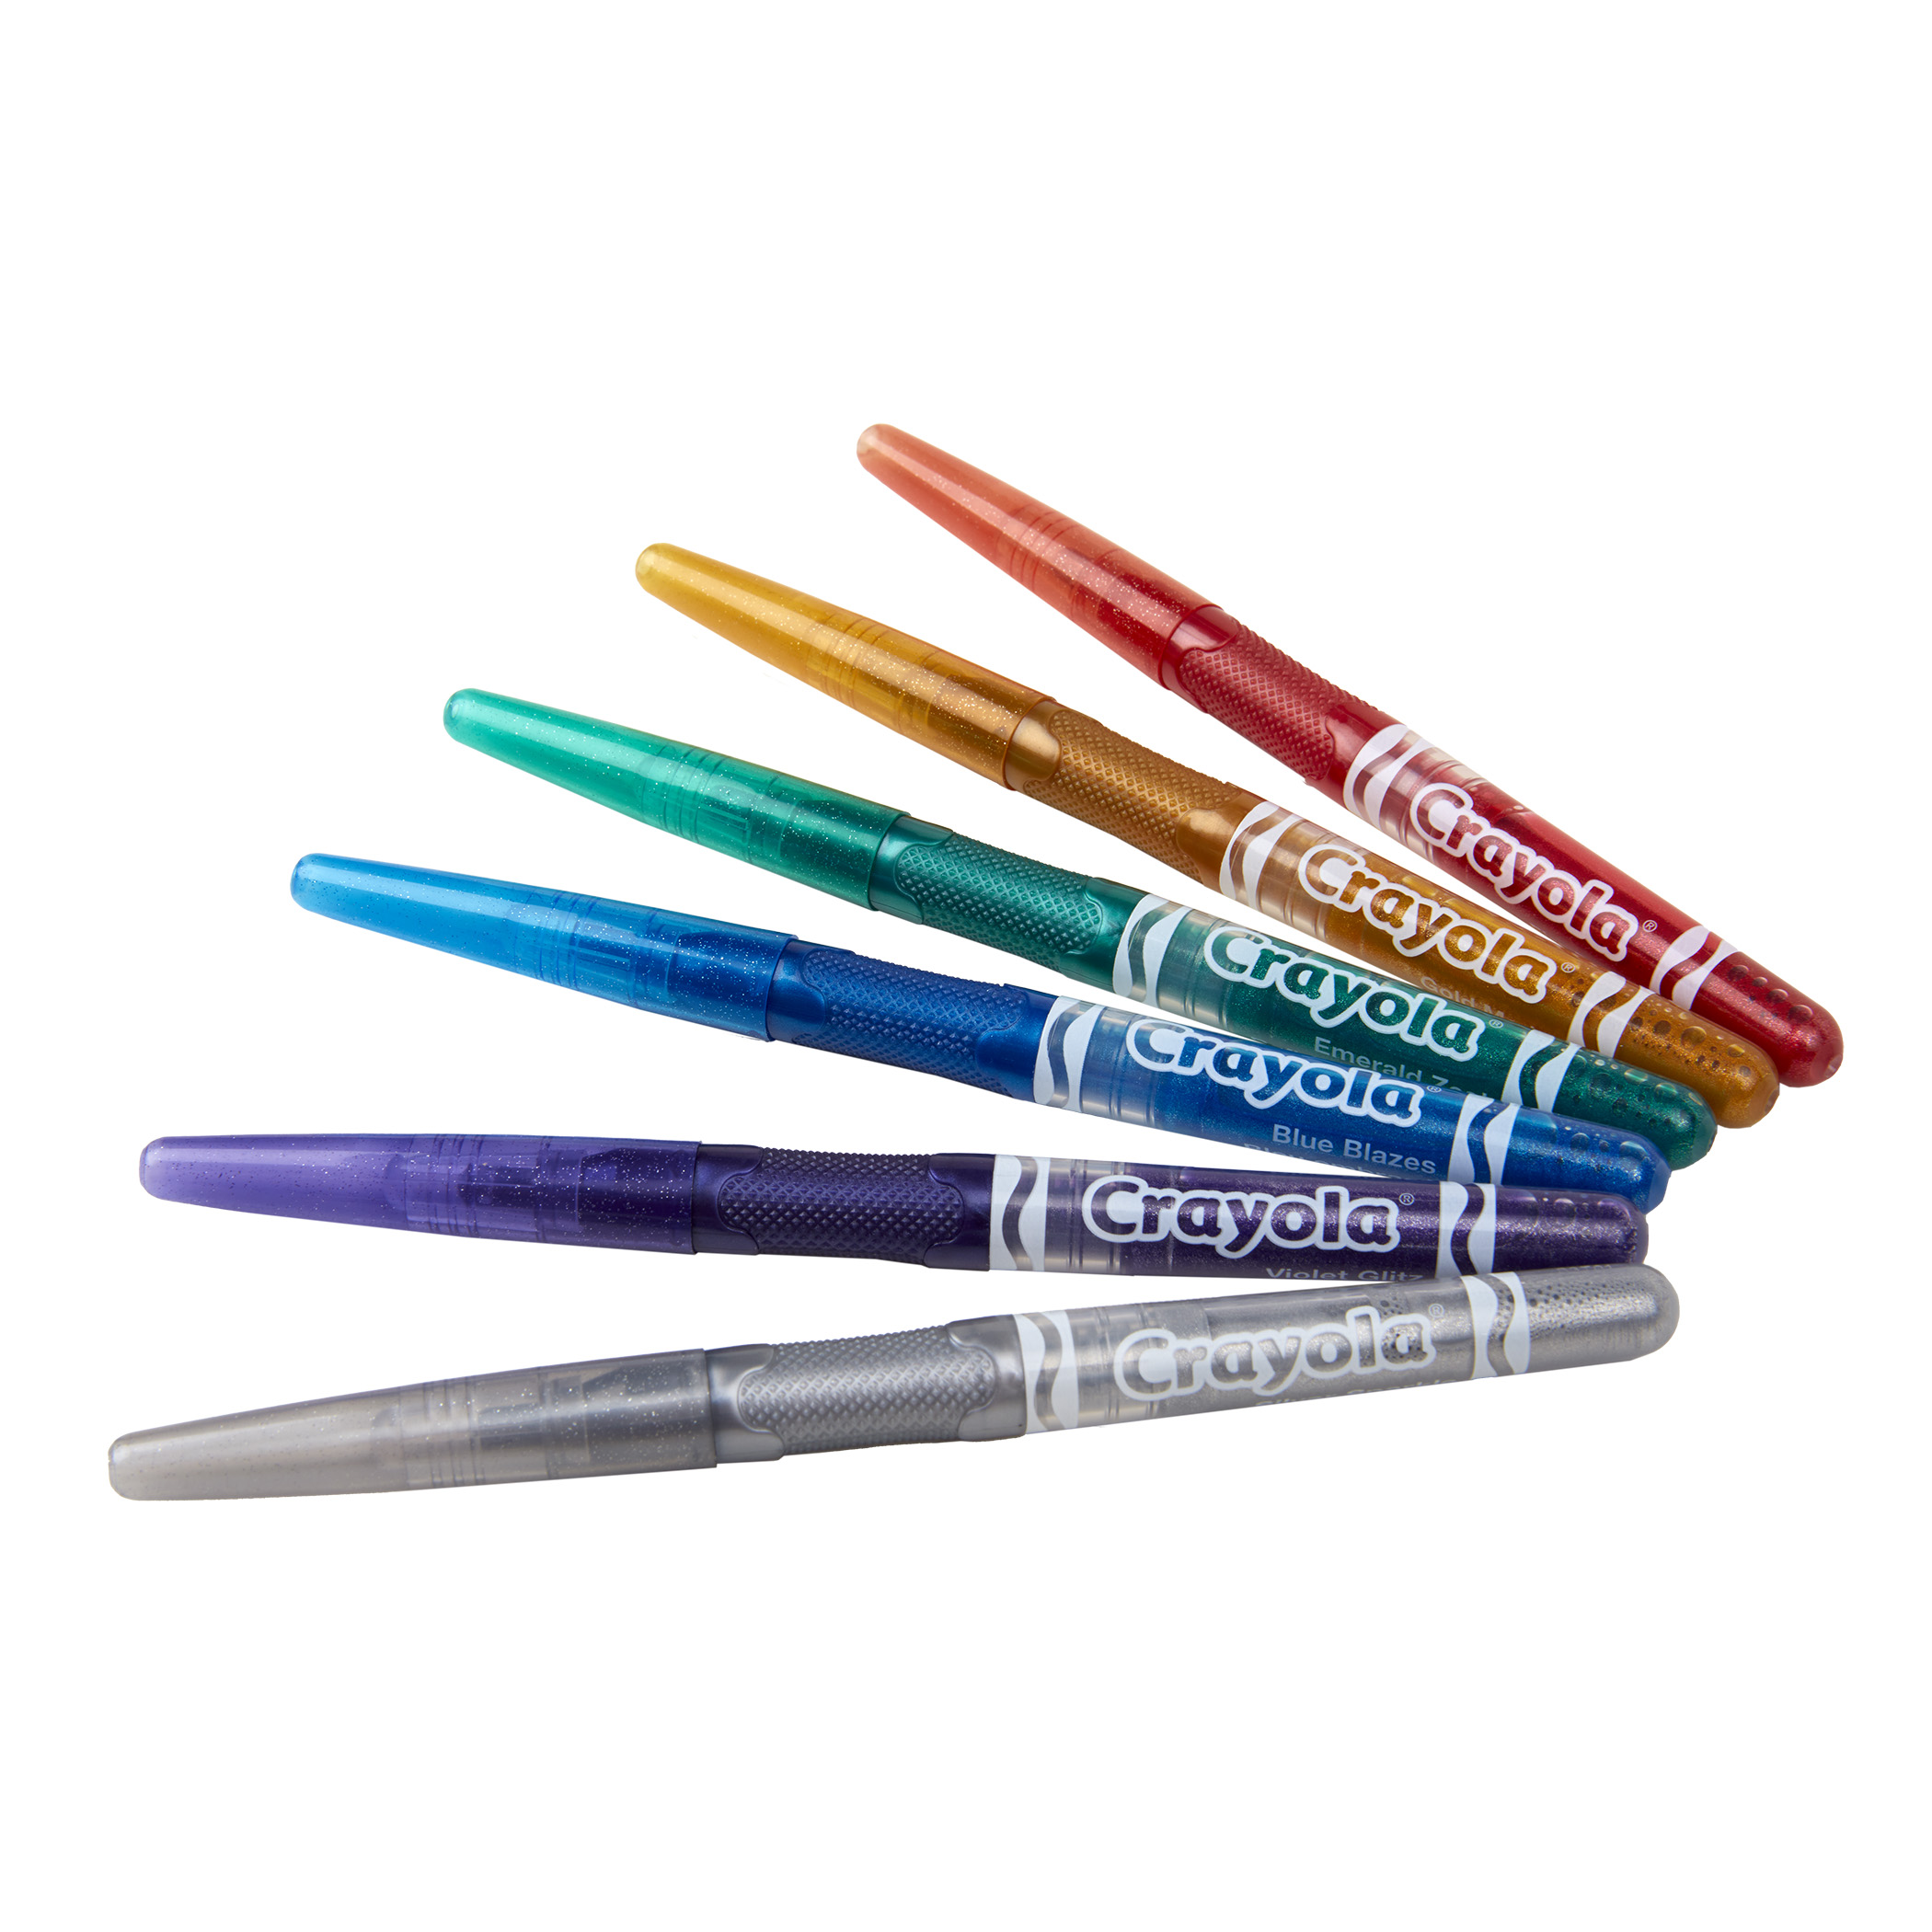 Crayola Glitter Markers. Crayola Glitter Markers